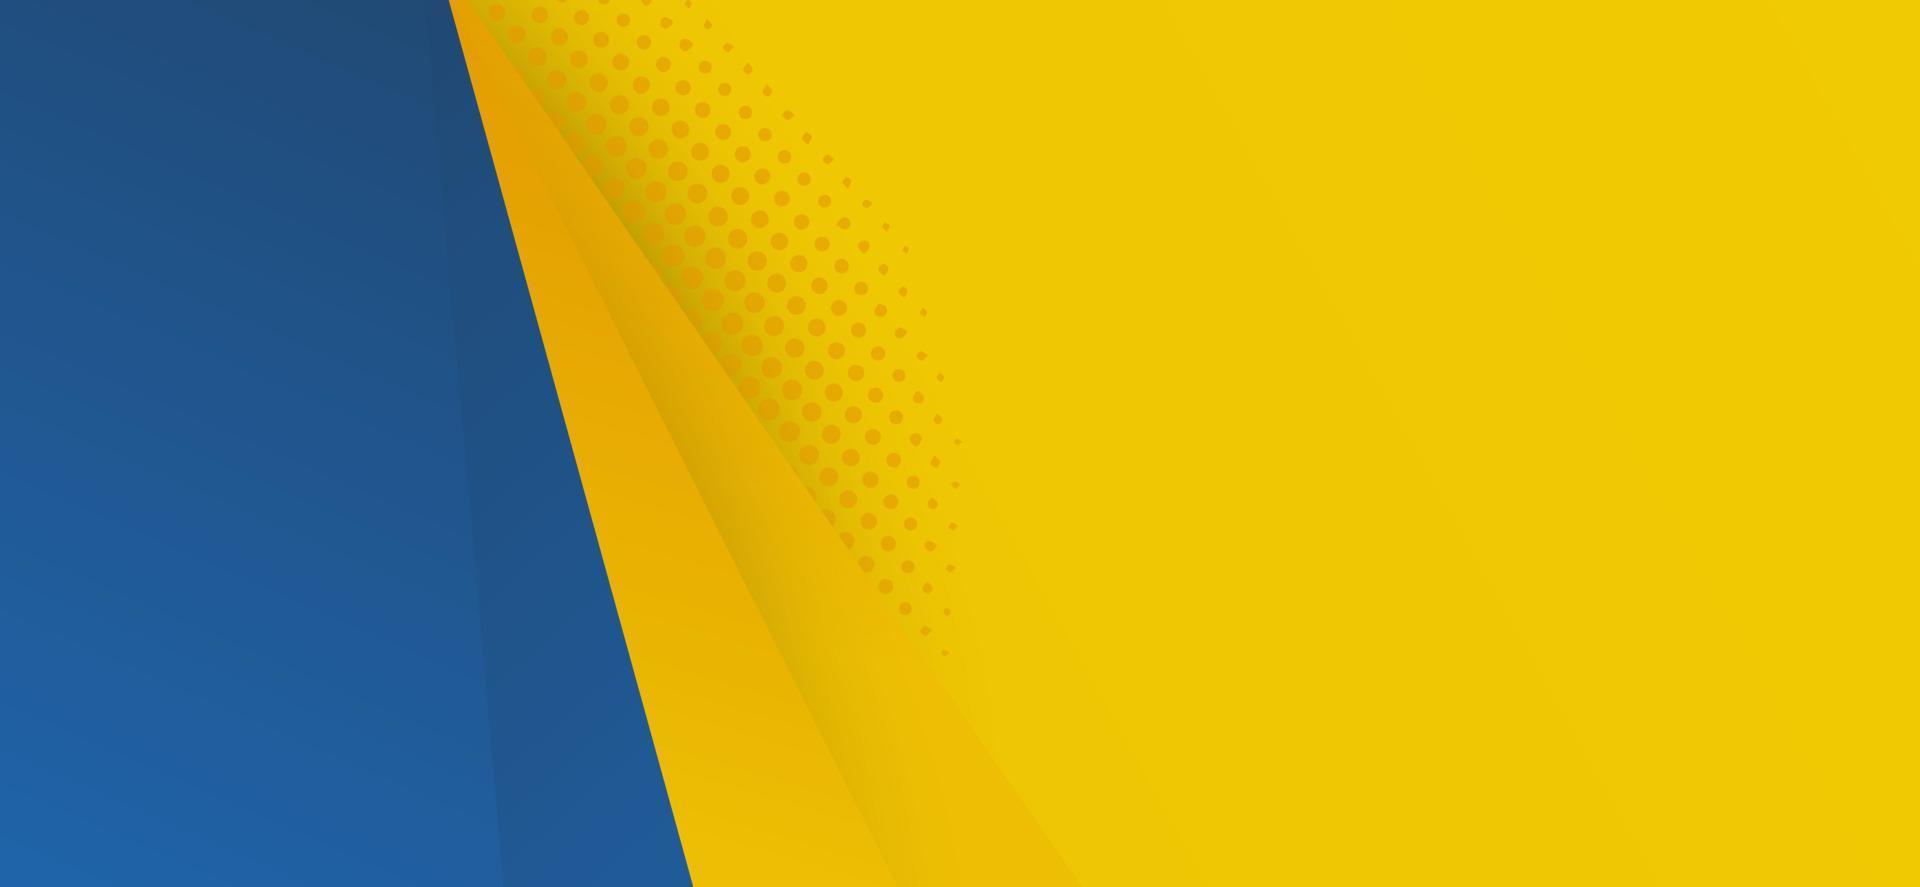 trendig abstrakt bakgrundsdesign i vektor. gul och blå hipster futuristisk grafik. med gul bakgrund som används i textur design, ljus affisch, banner gul och blå bakgrund vektor